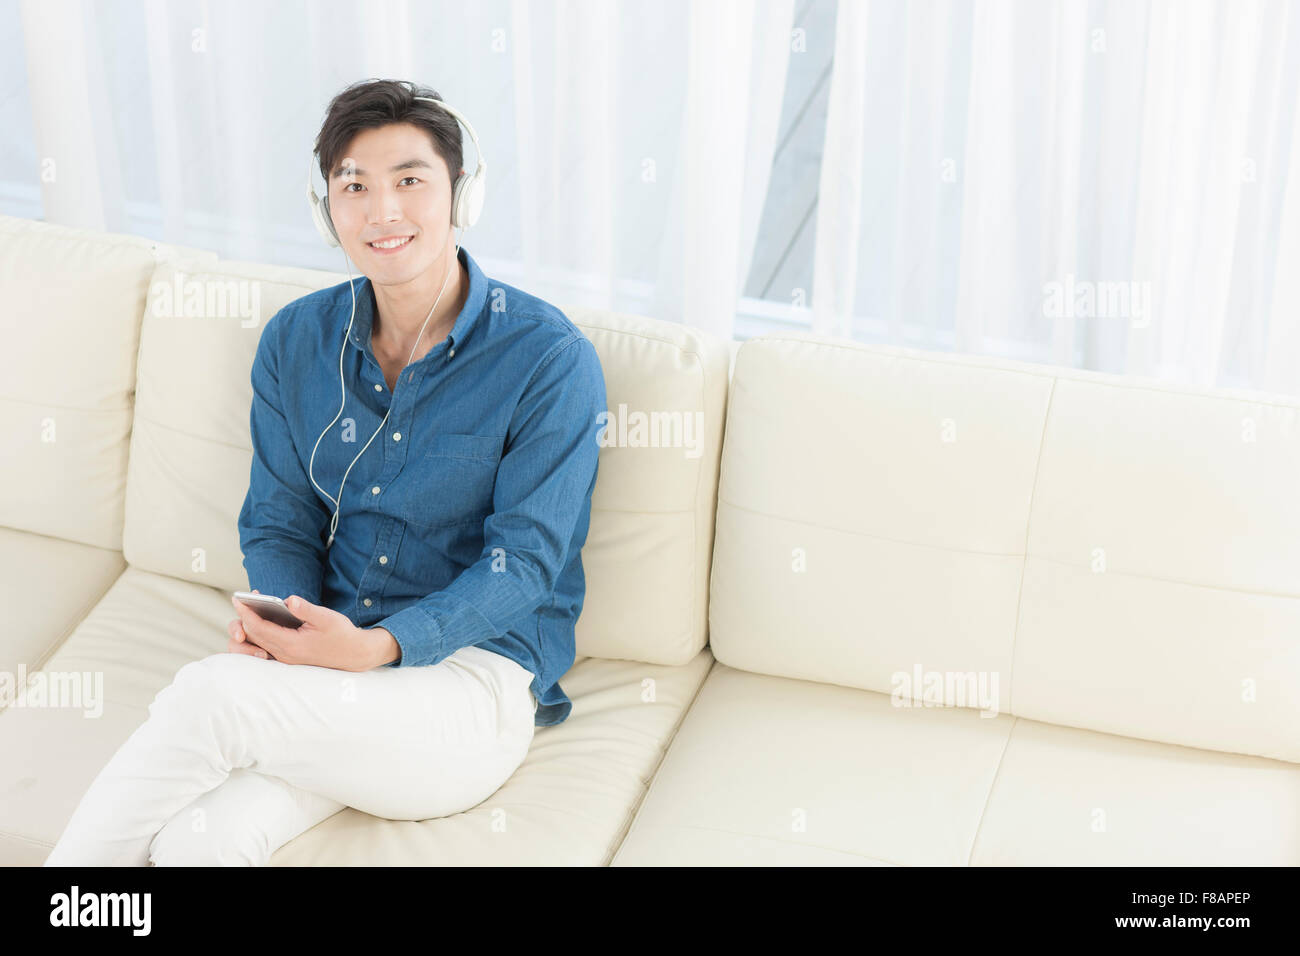 Lächelnd jungen Mann auf Sofa sitzen mit gekreuzten Beinen Musikhören auf Smartphone starrte auf Vorderseite Stockfoto